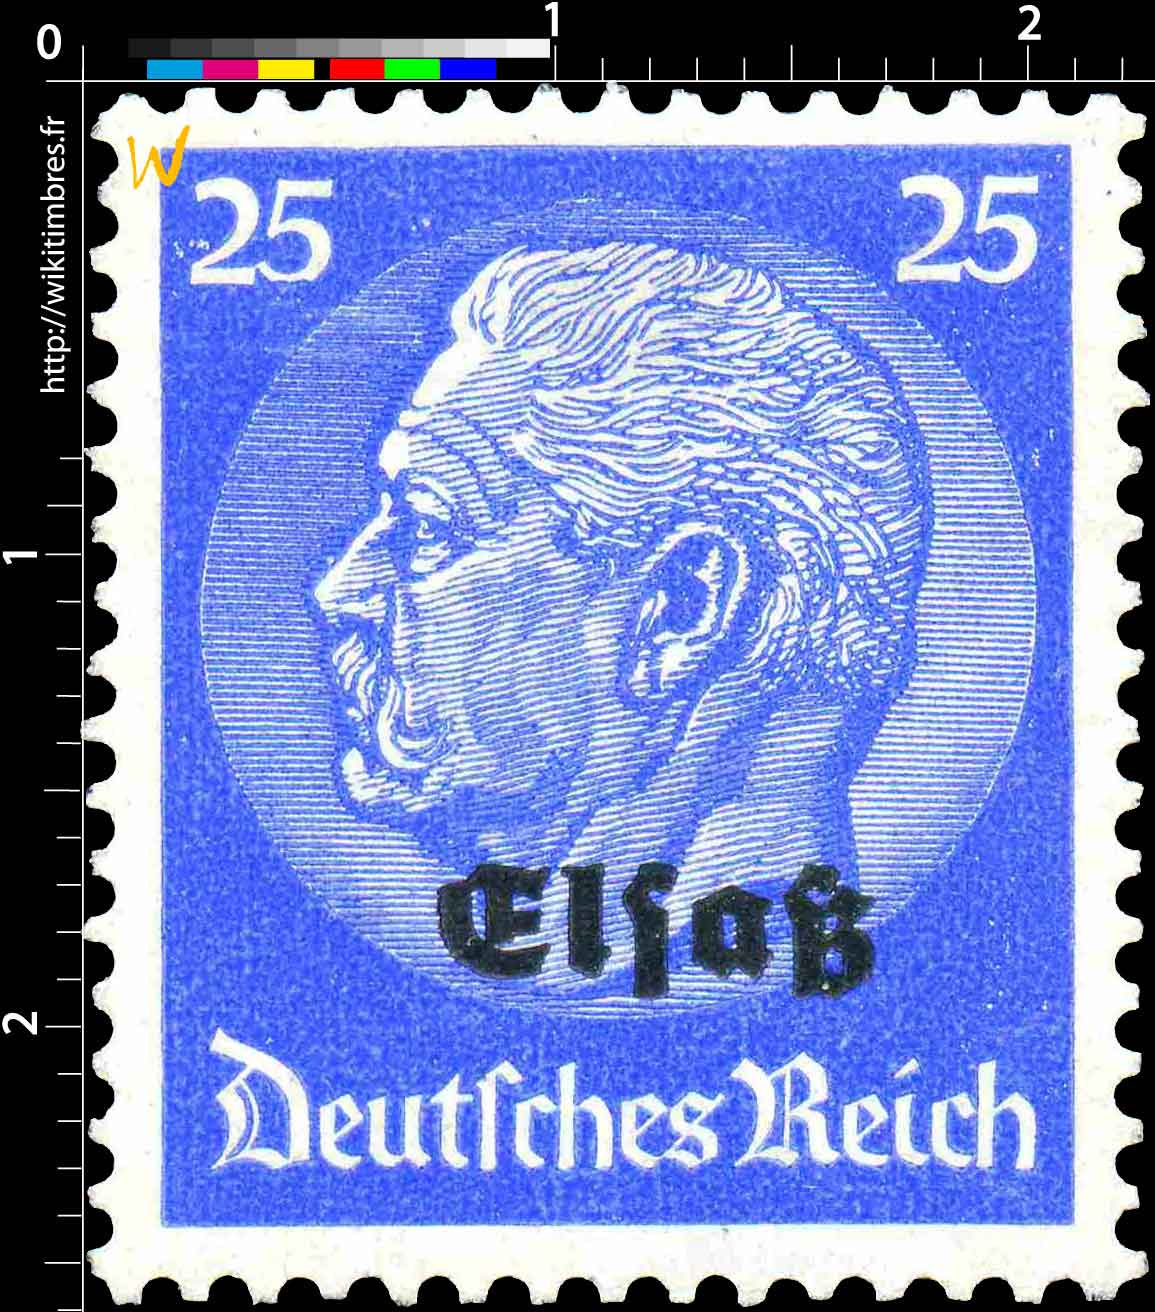 Elsaß Deutches Reich